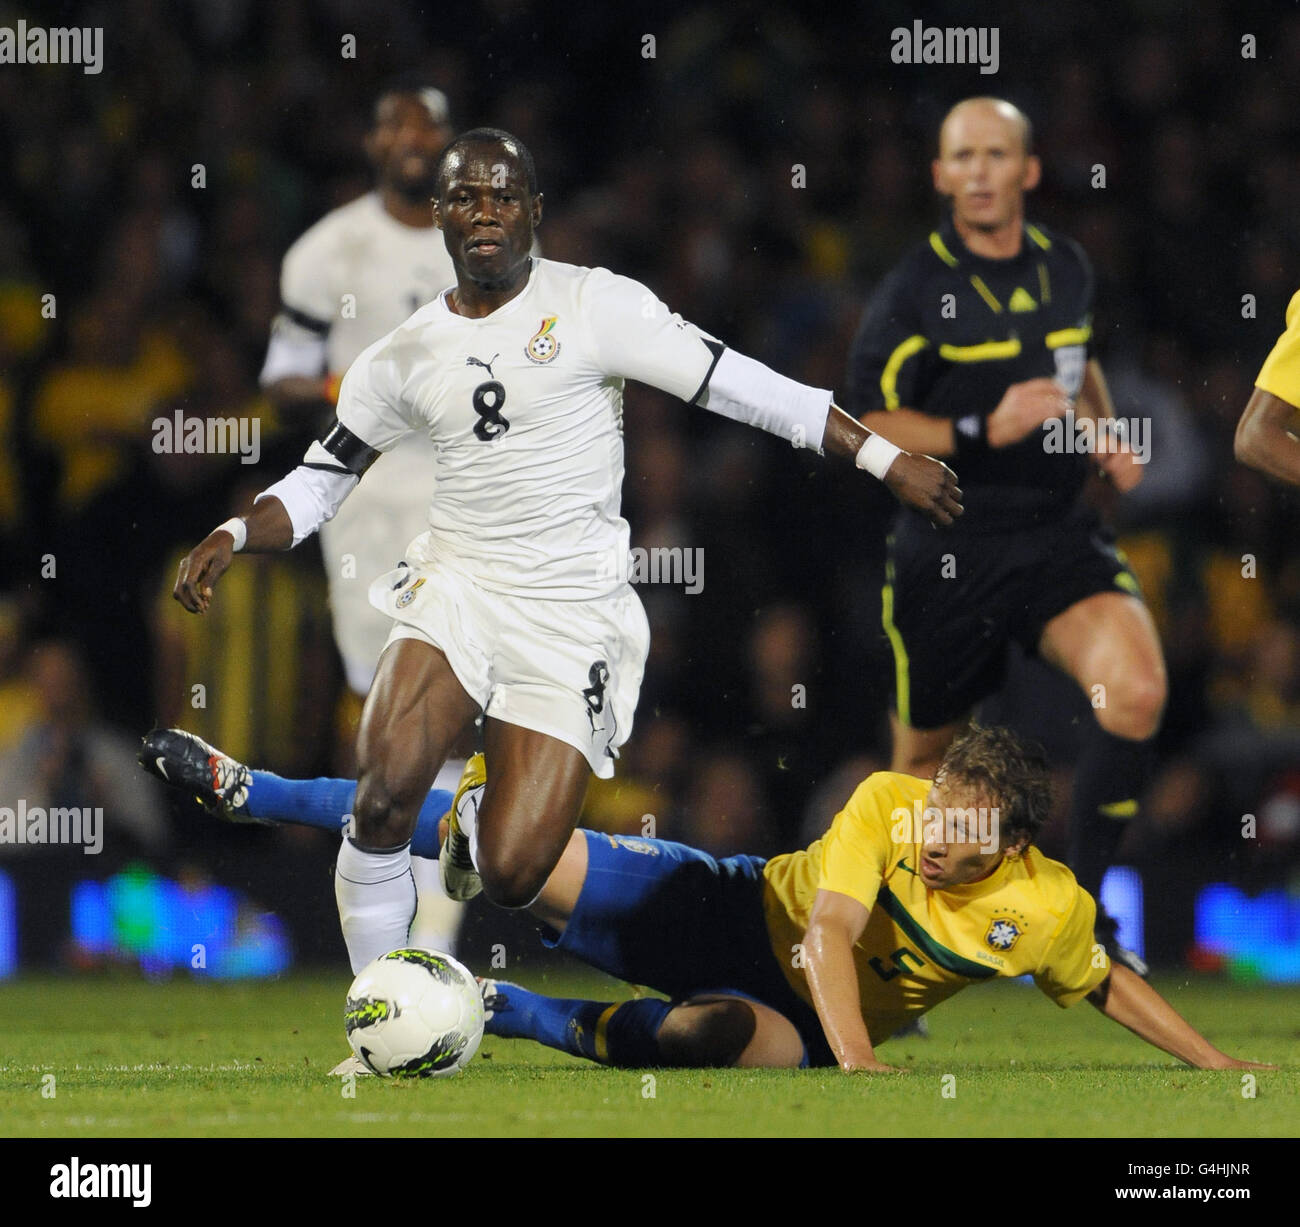 Brazil's Lucas Leiva and Ghana's Emmanuel Agyemang-Badu (left) battle for the ball Stock Photo